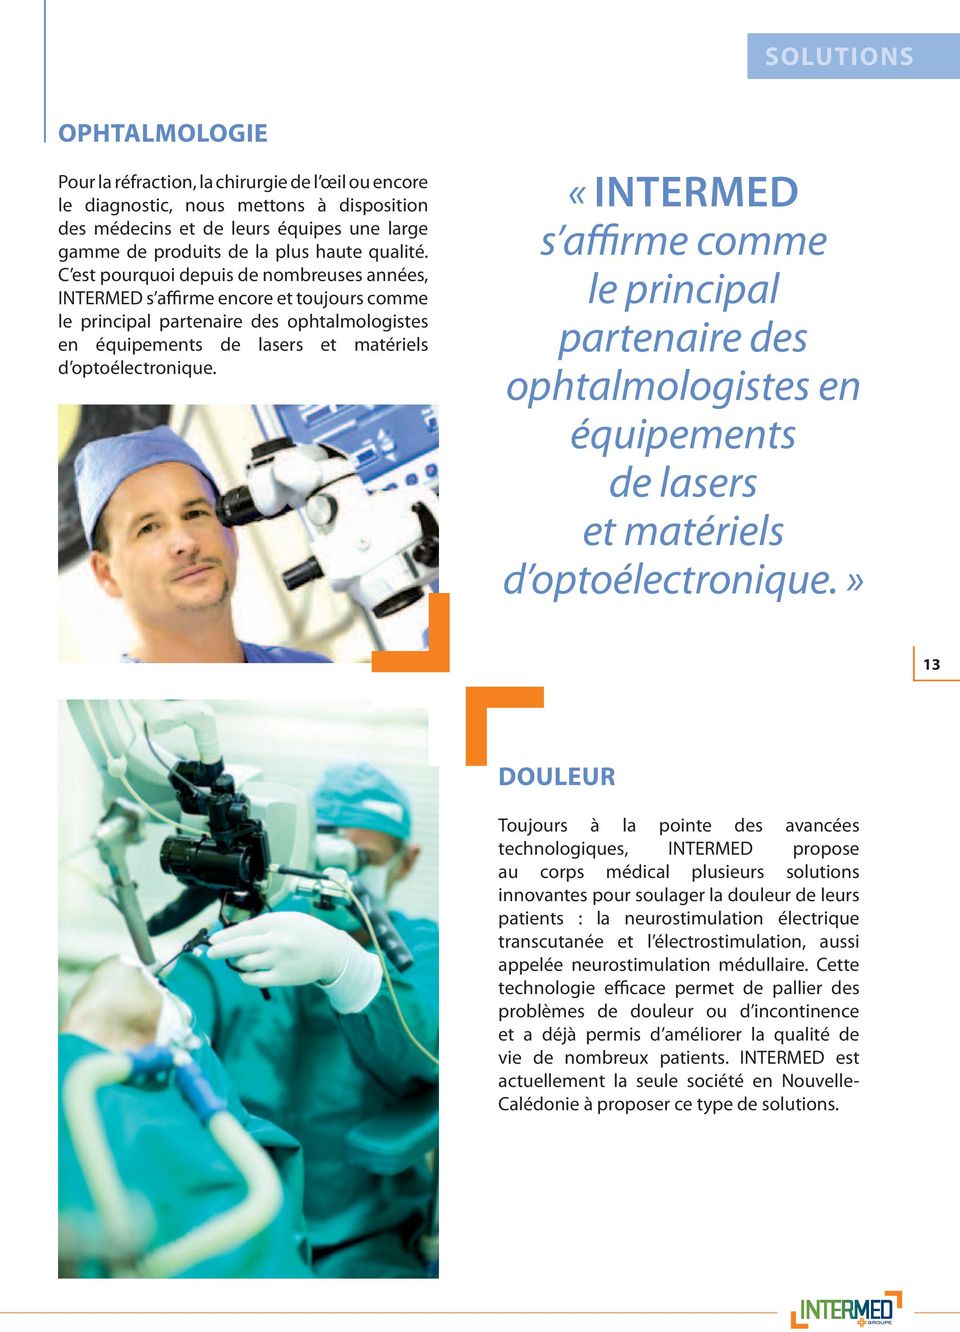 «INTERMED s affirme comme le principal partenaire des ophtalmologistes en équipements de lasers et matériels d optoélectronique.